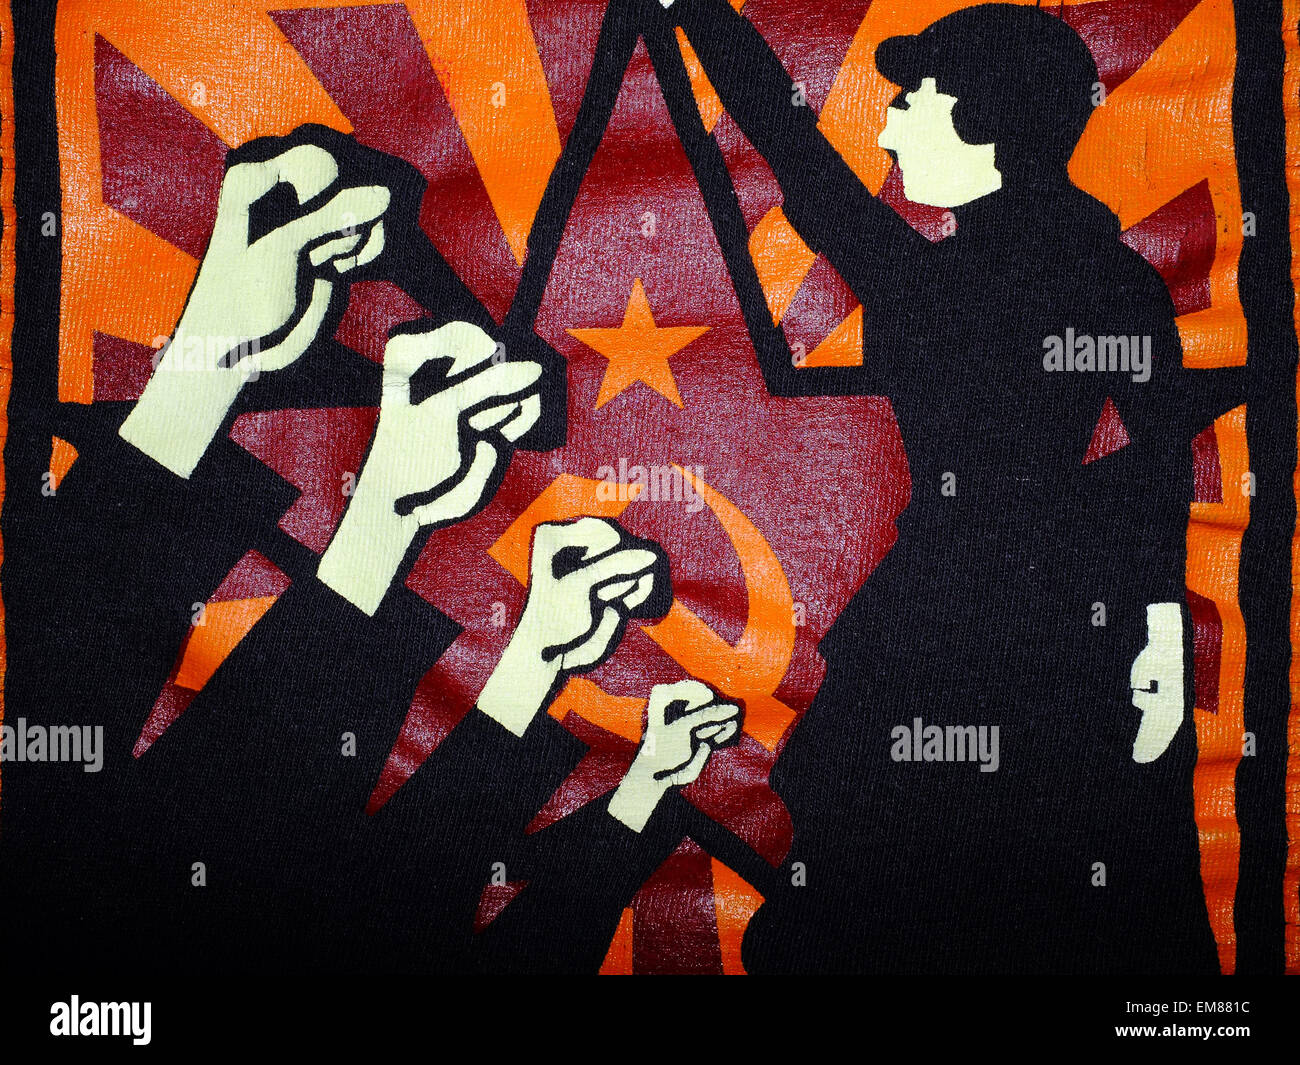 Un graphique style soviétique féministes marxiste image imprimée sur une page. Banque D'Images